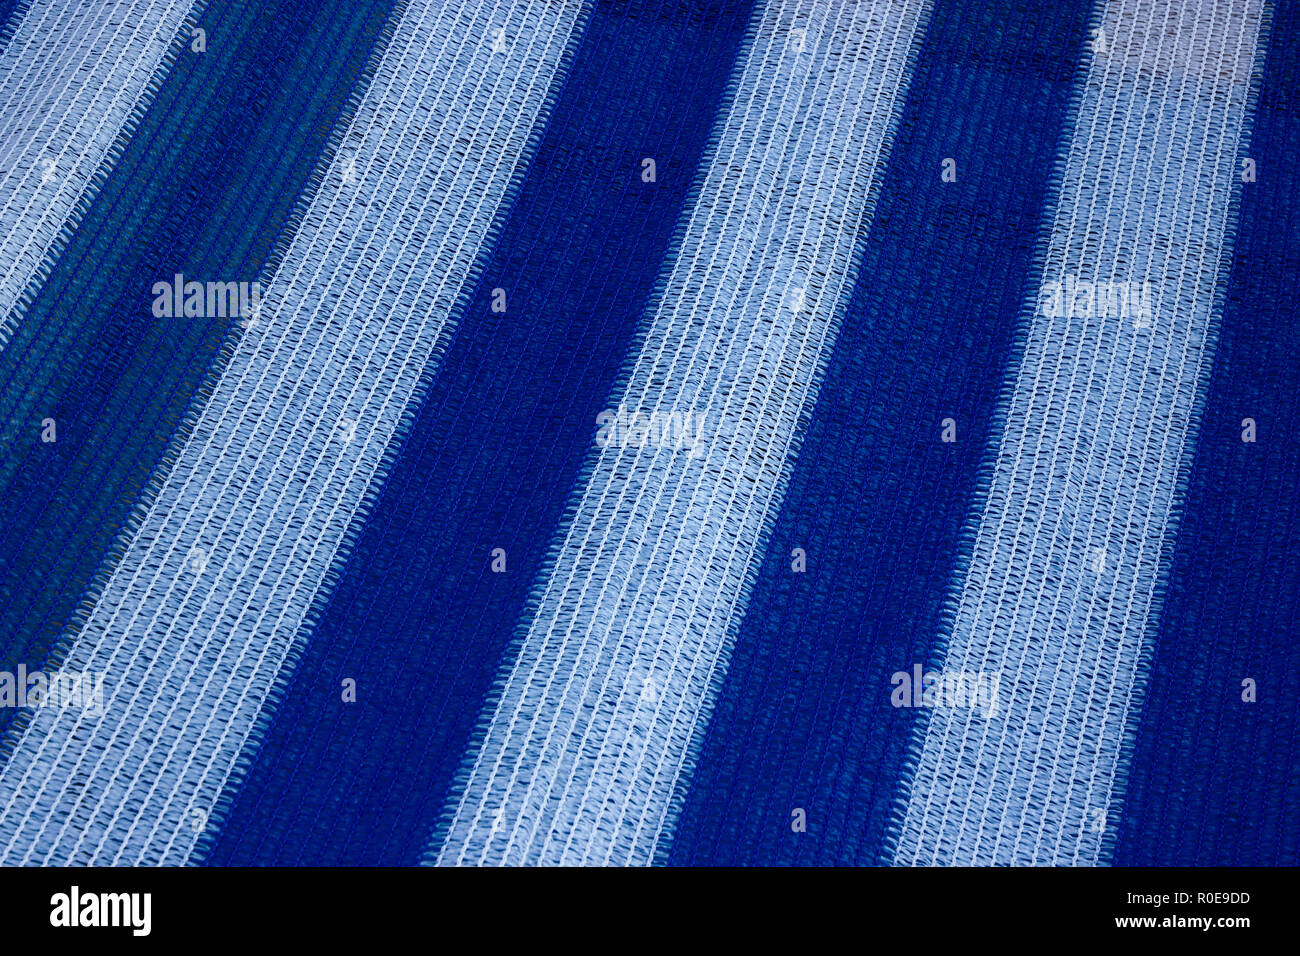 Eine schöne, weiße und blau gestreiften Textur eines Bootes Abdeckung am Meer Stockfoto